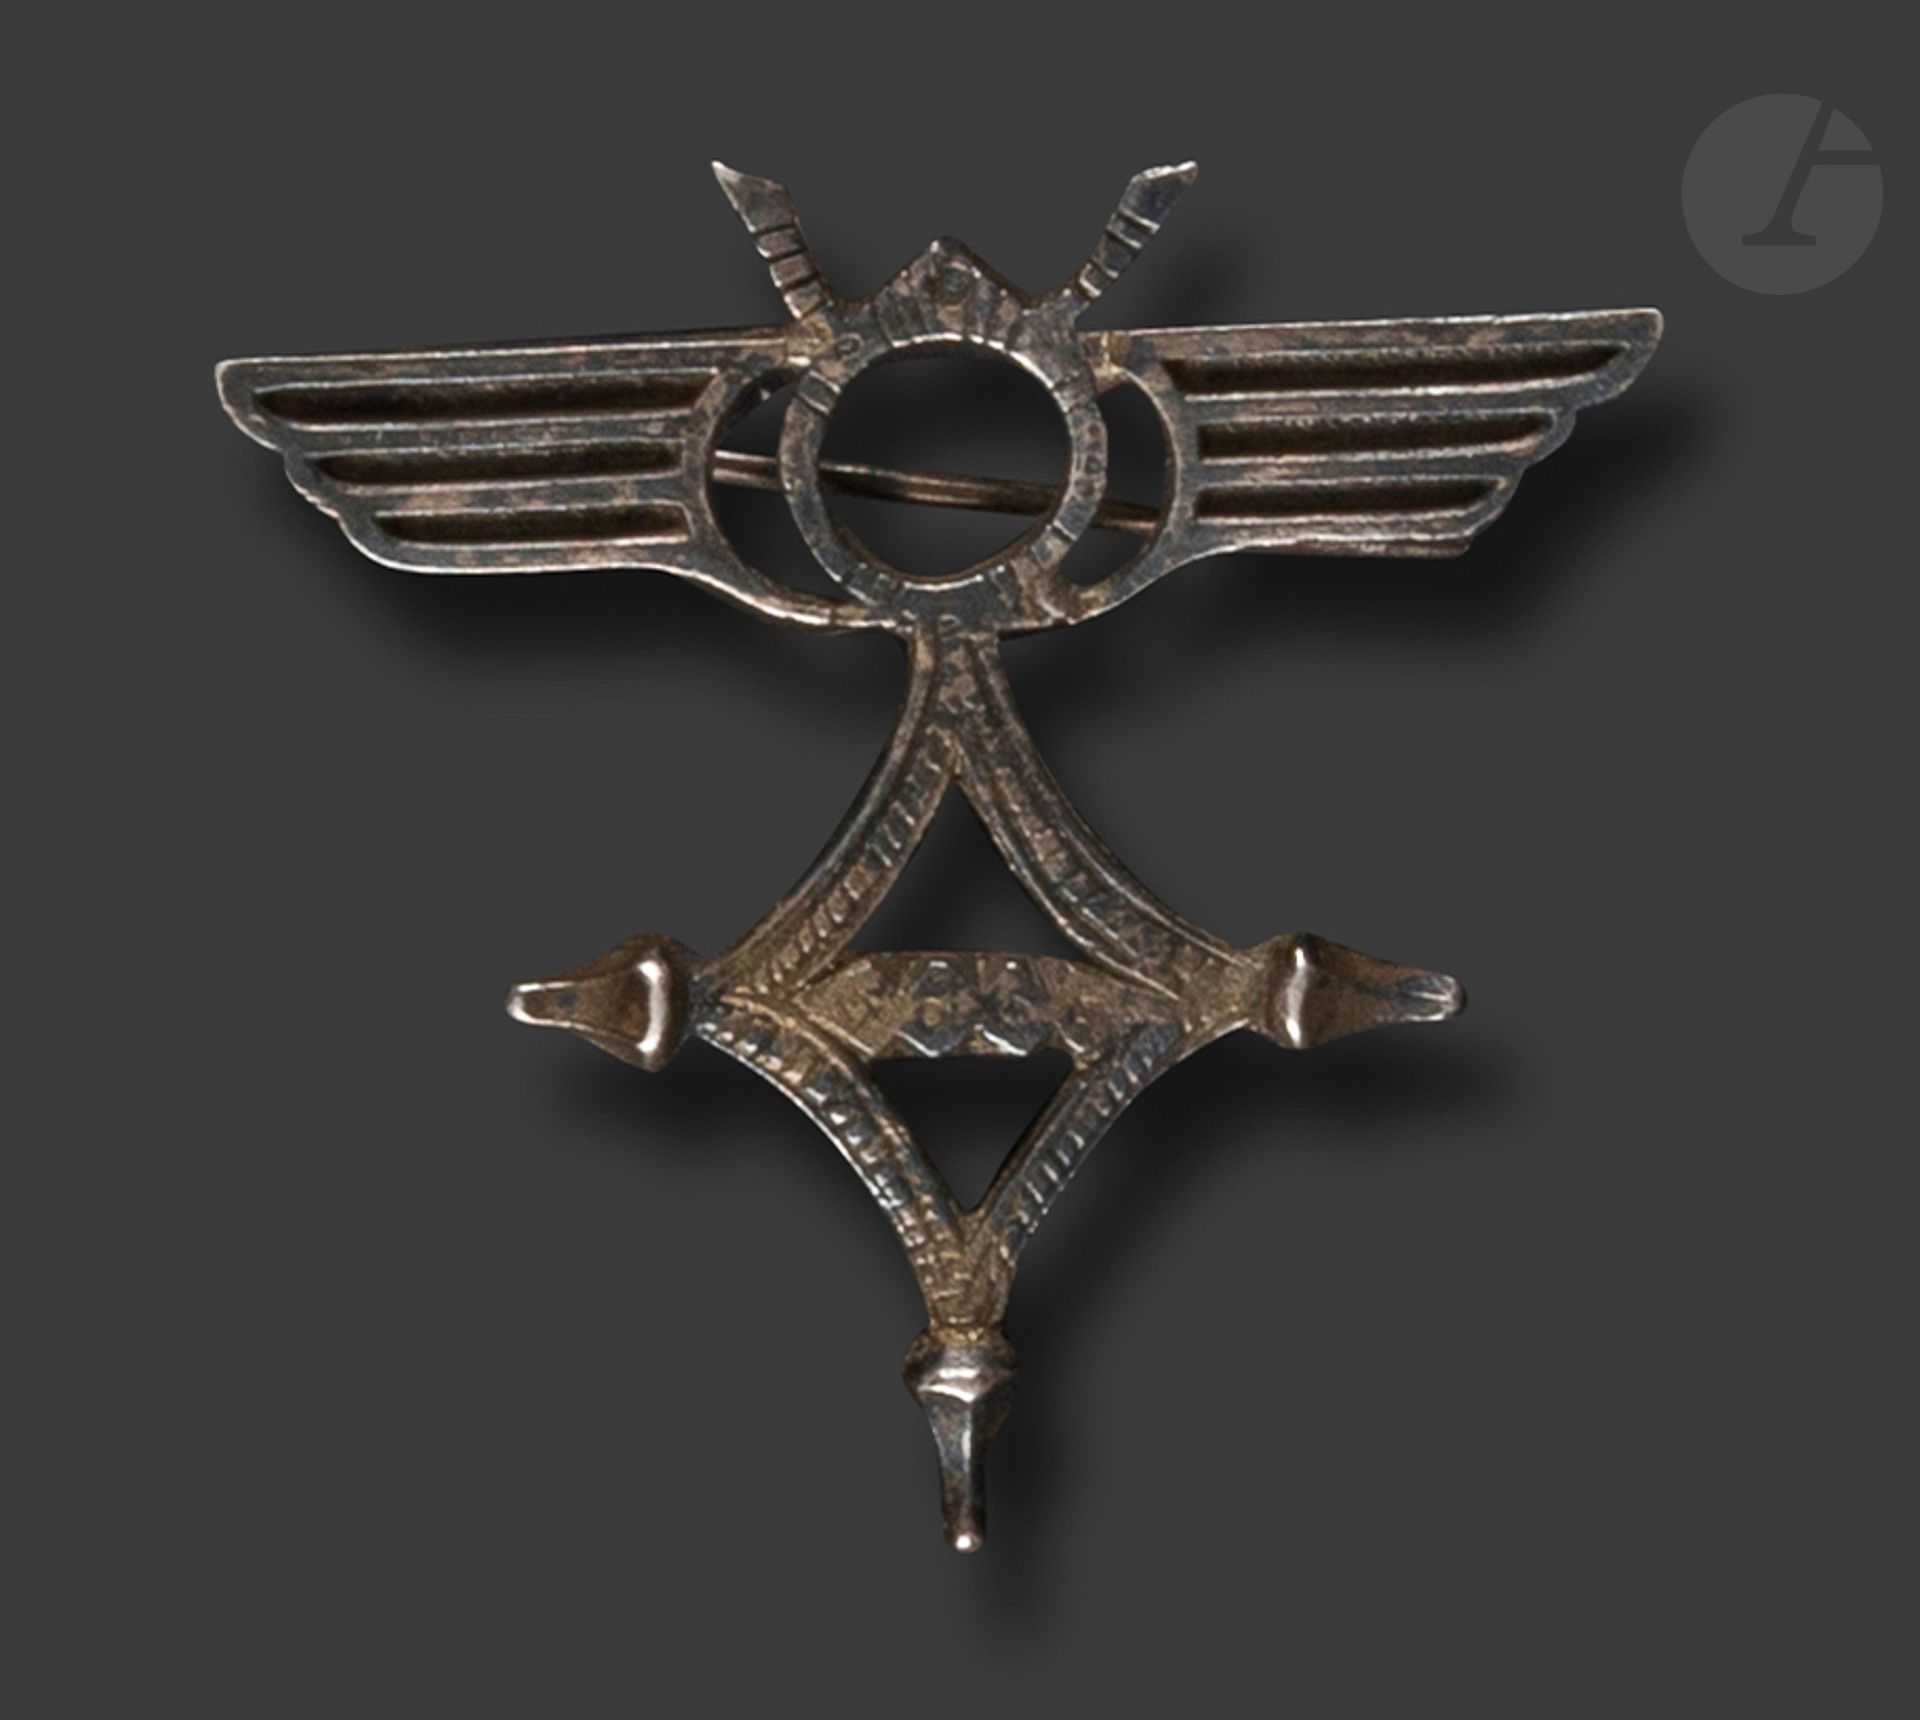 Null 法国。第591号观察机群的徽章。
镀银青铜器（一翼有小修补）。
没有标记。
45 x 45 mm
T.B. To T.T.B.